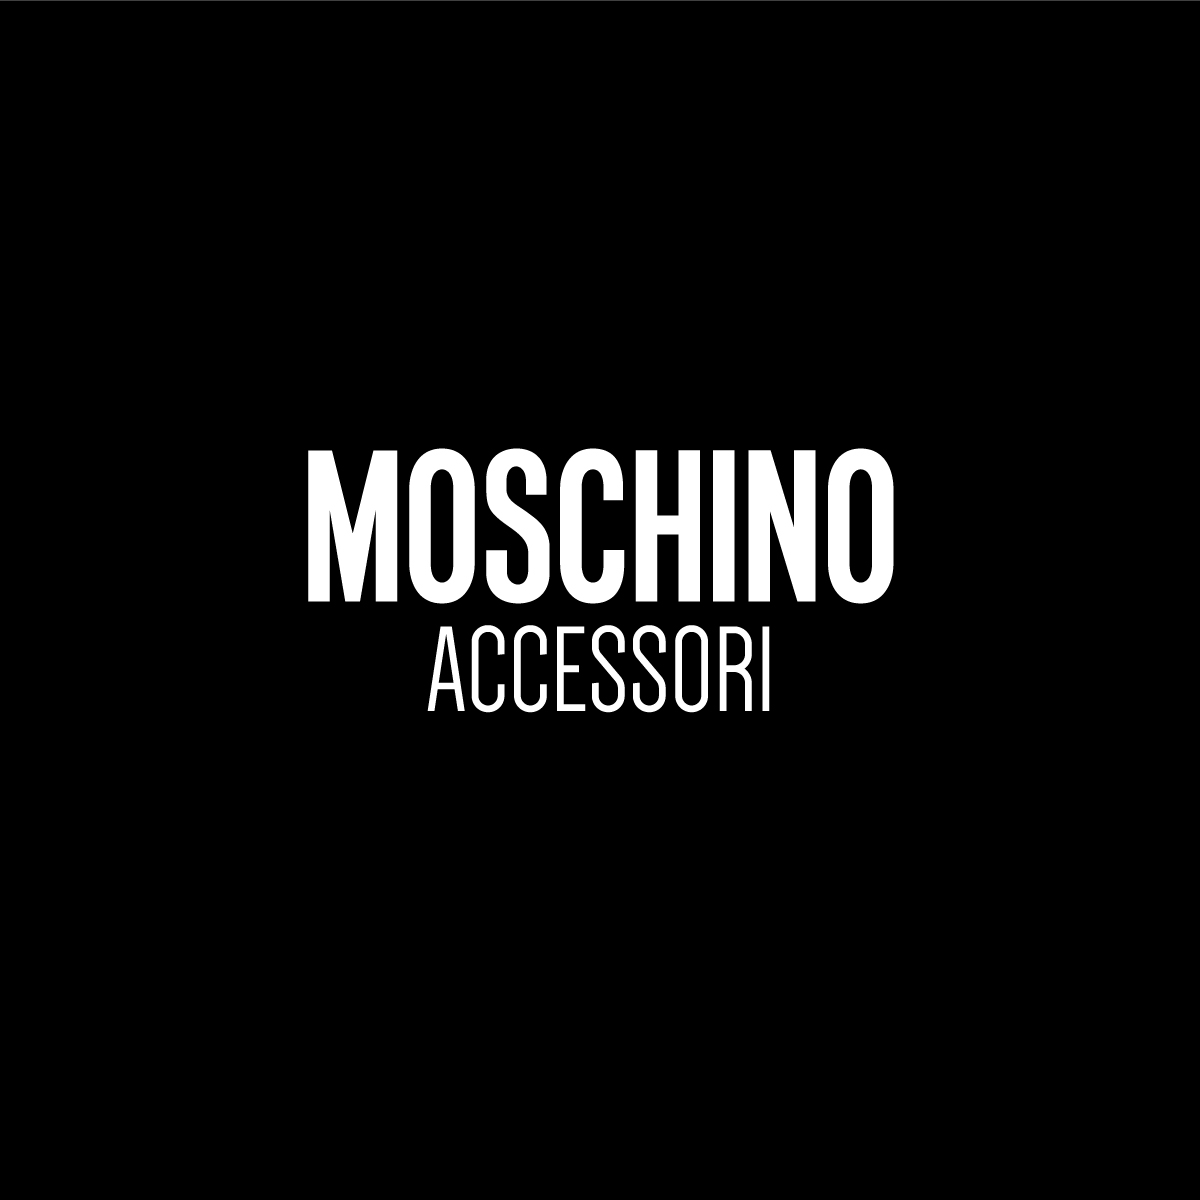 Moschino-Accessori-anteprima